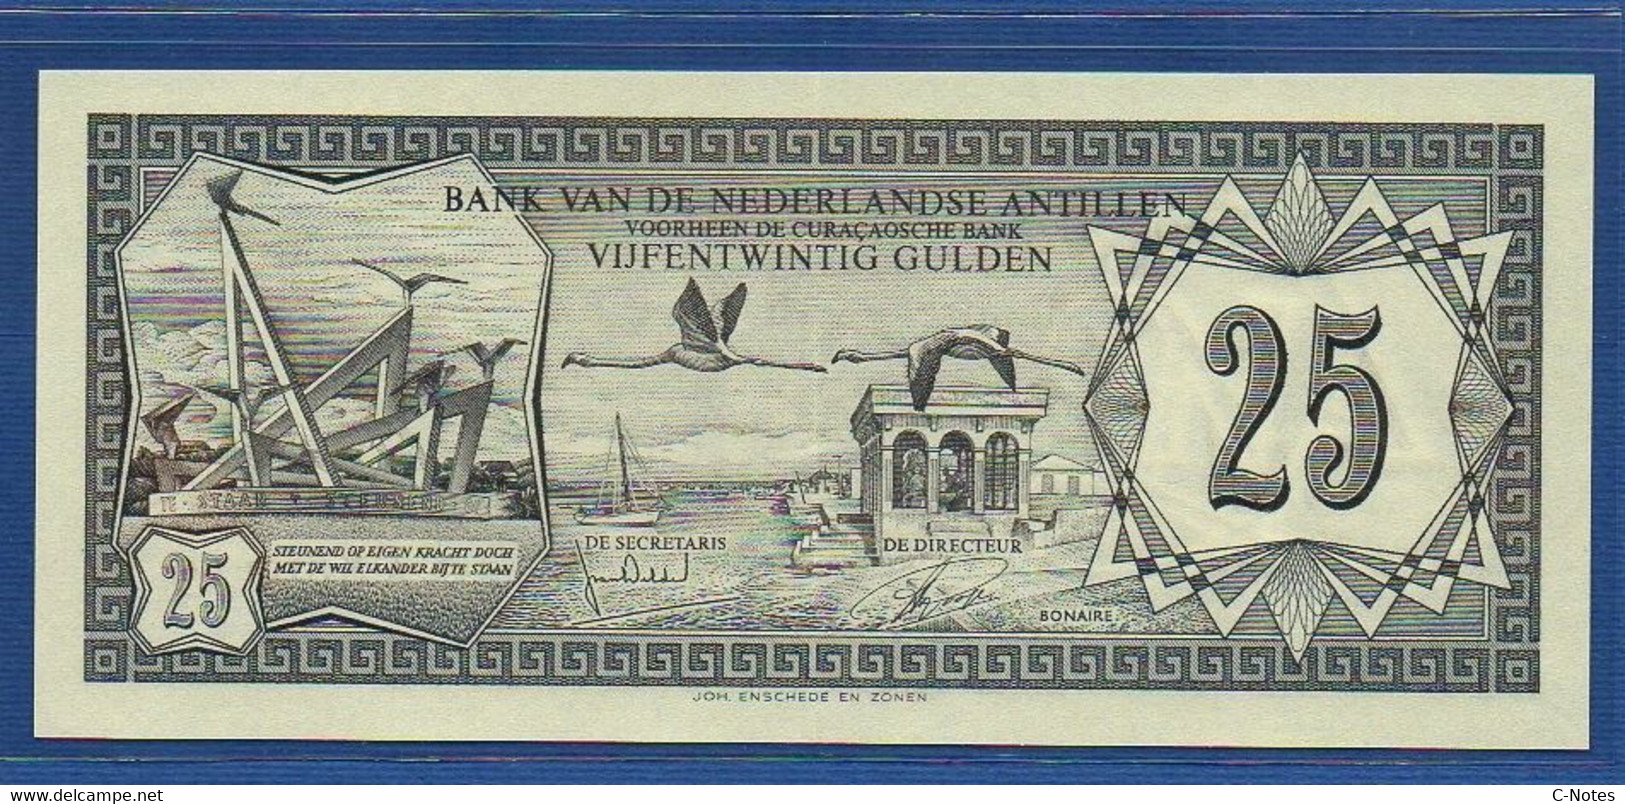 NETHERLANDS ANTILLES - P.10b – 25 Gulden 1972 AUNC, Serie LA866119 - Netherlands Antilles (...-1986)